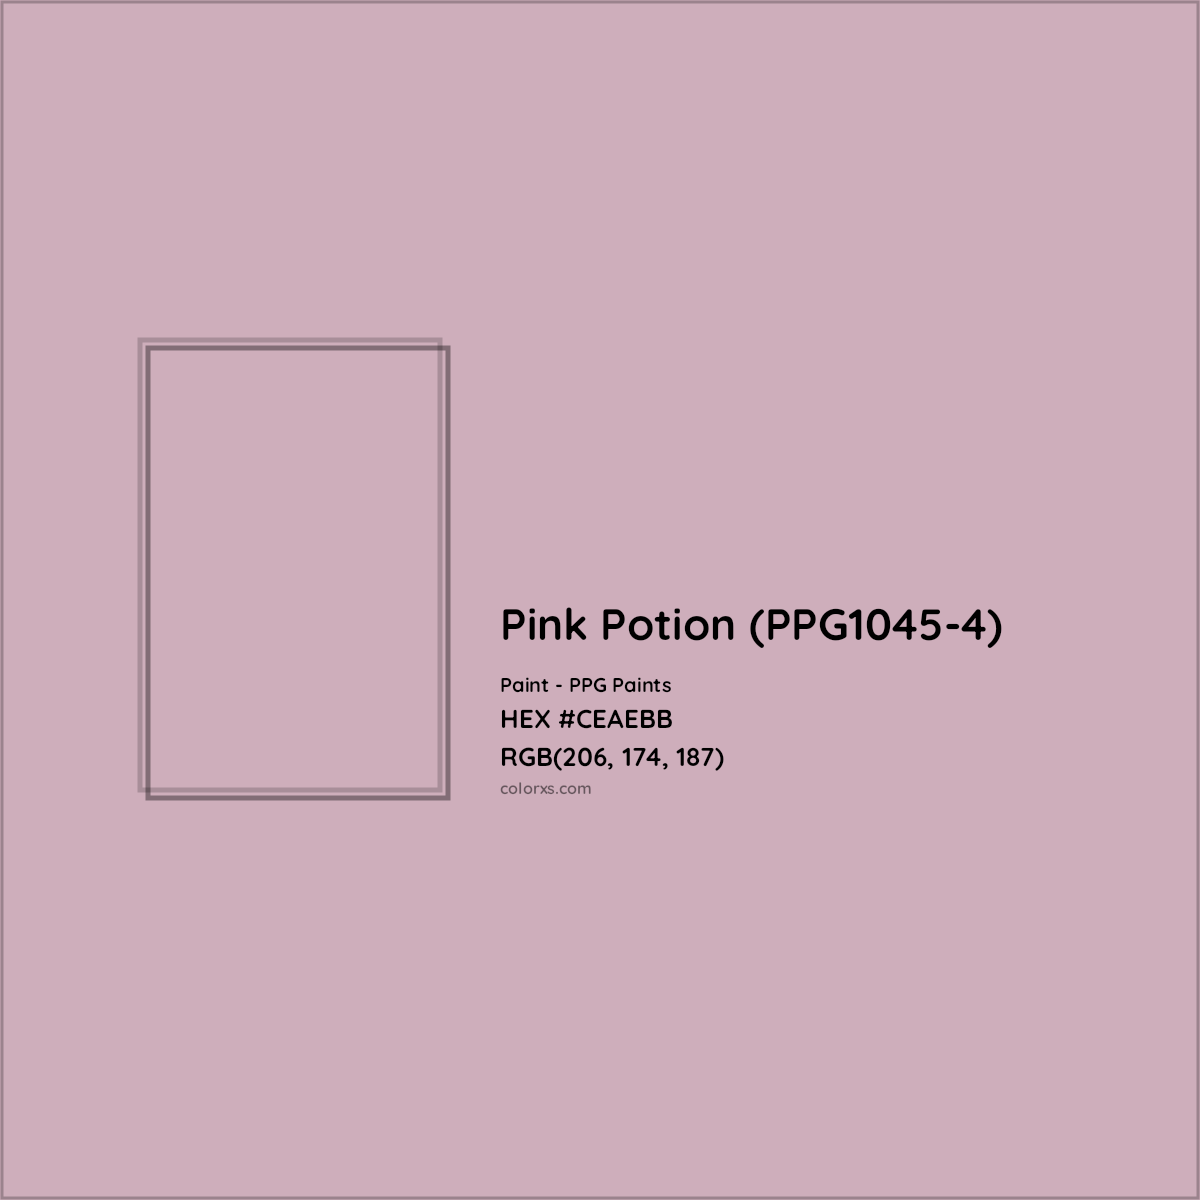 HEX #CEAEBB Pink Potion (PPG1045-4) Paint PPG Paints - Color Code